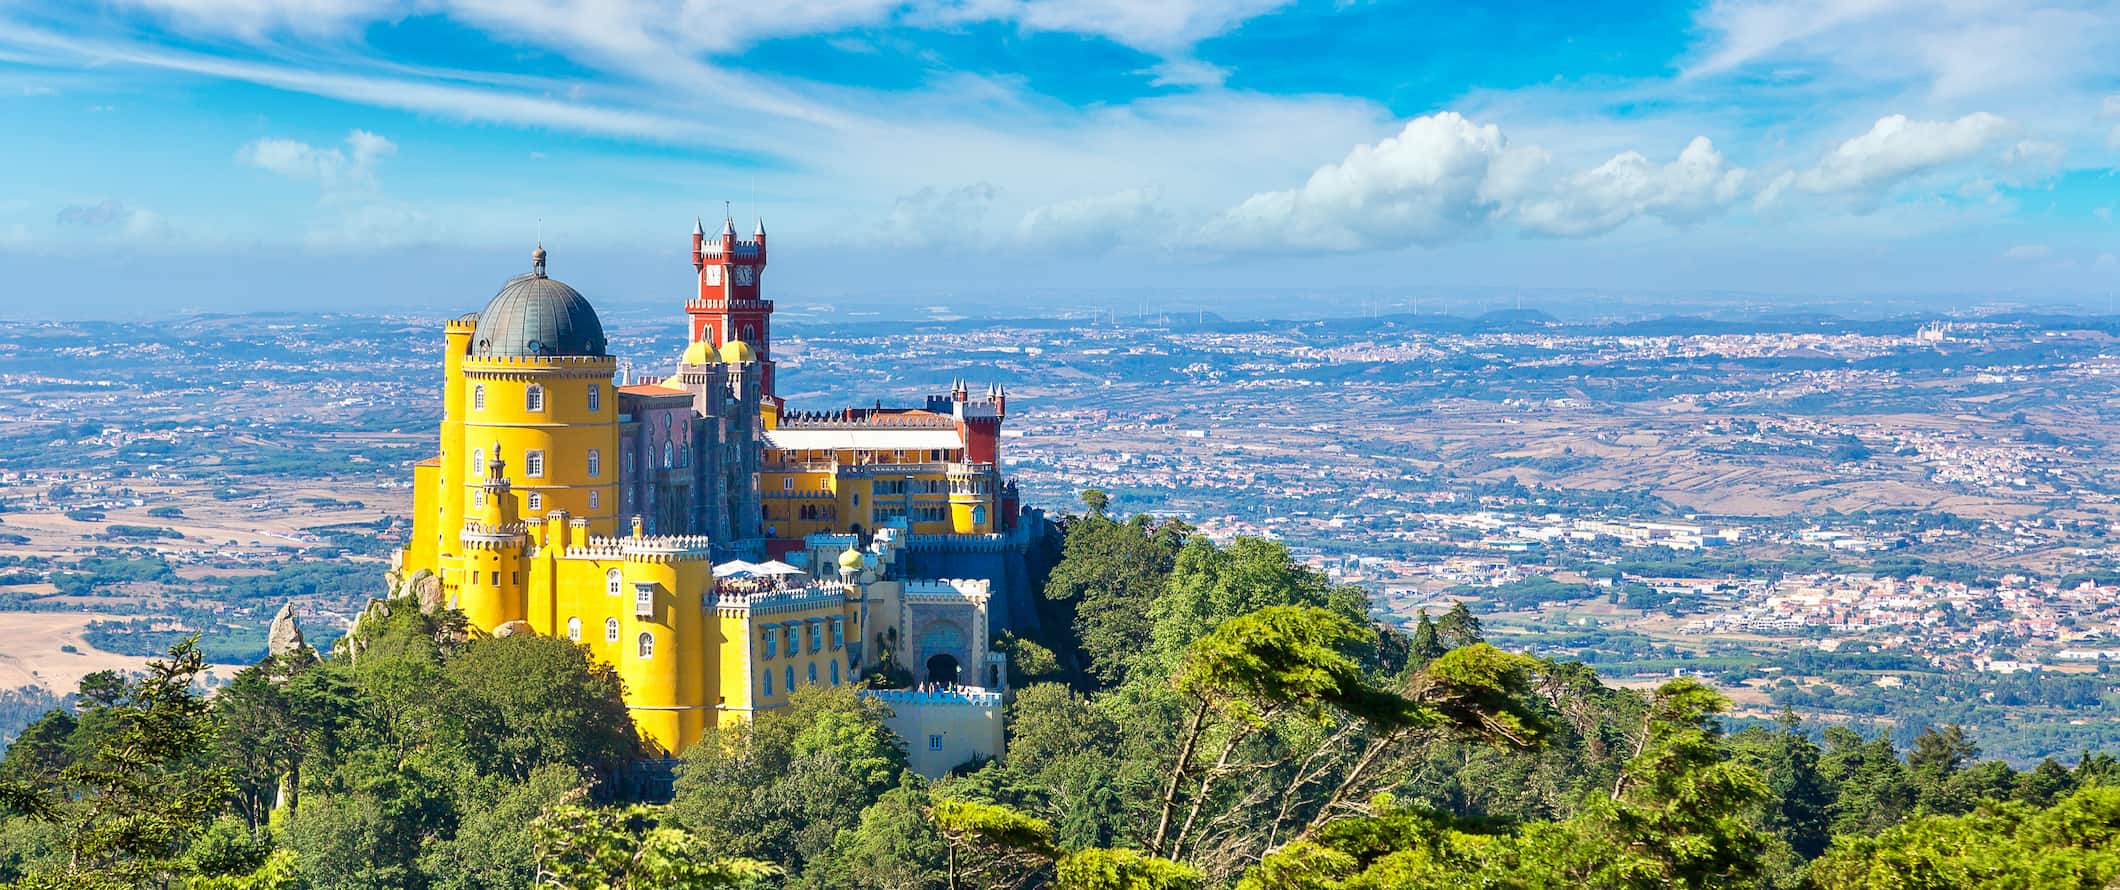 Edifício histórico que se eleva na montanha em Sintre, Portugal